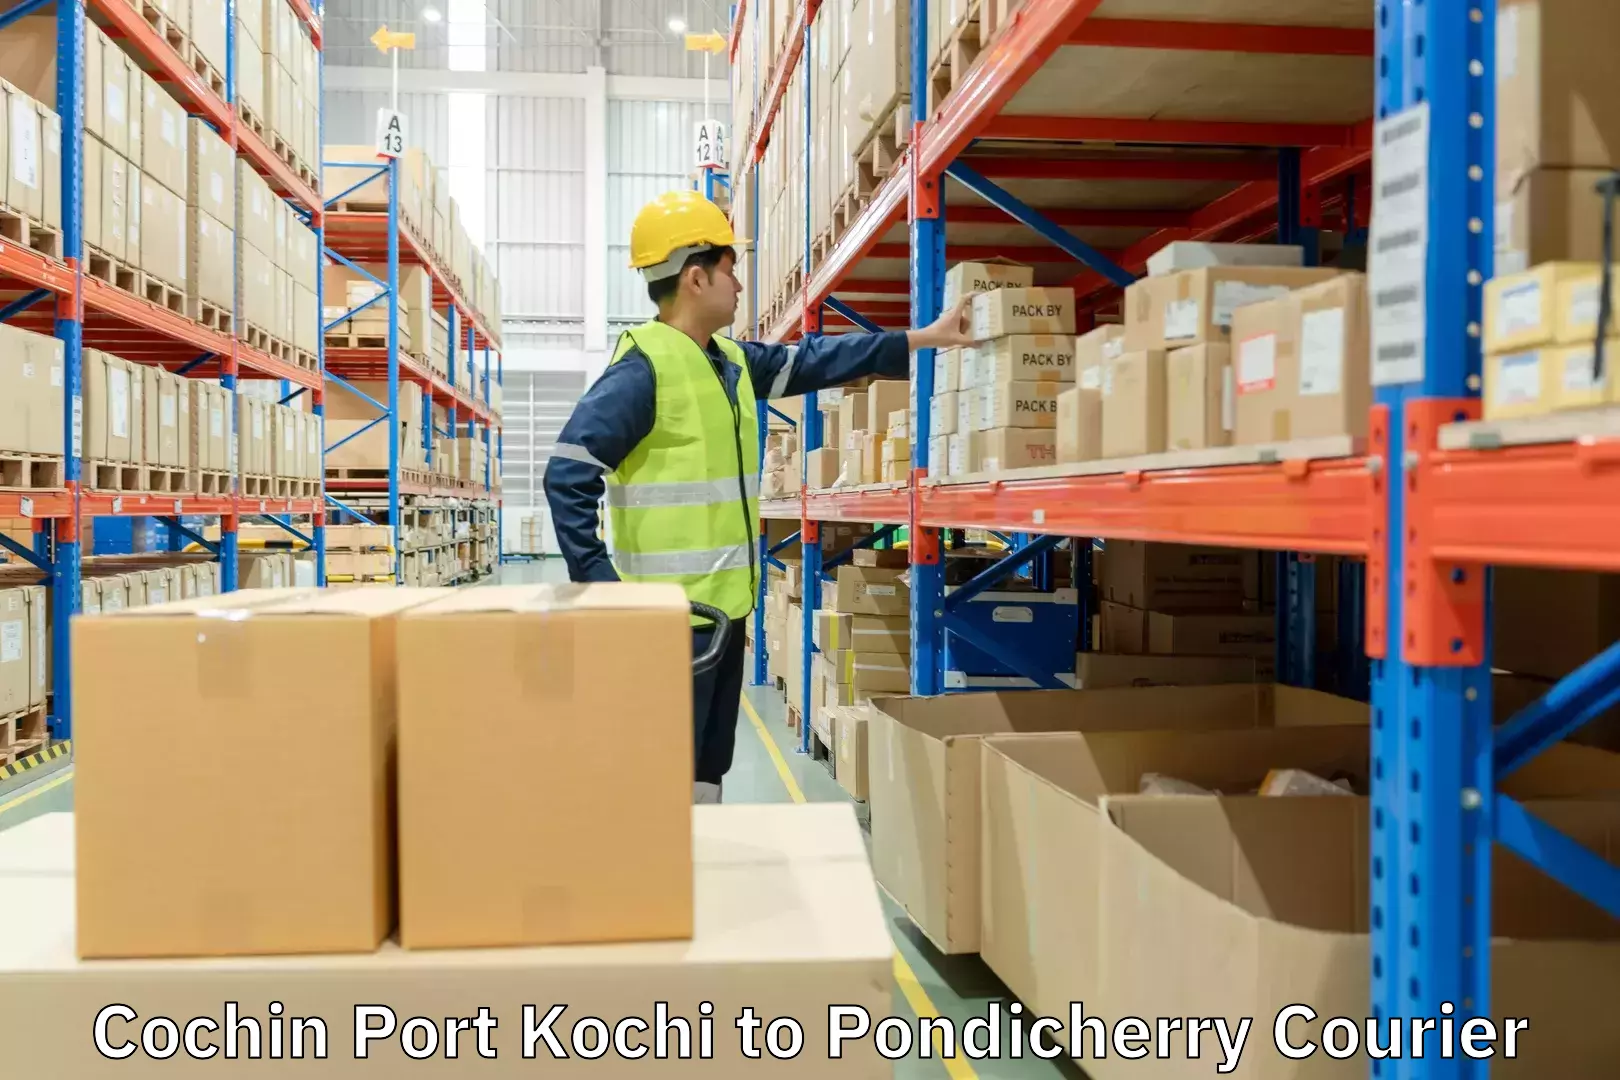 Modern courier technology in Cochin Port Kochi to Pondicherry